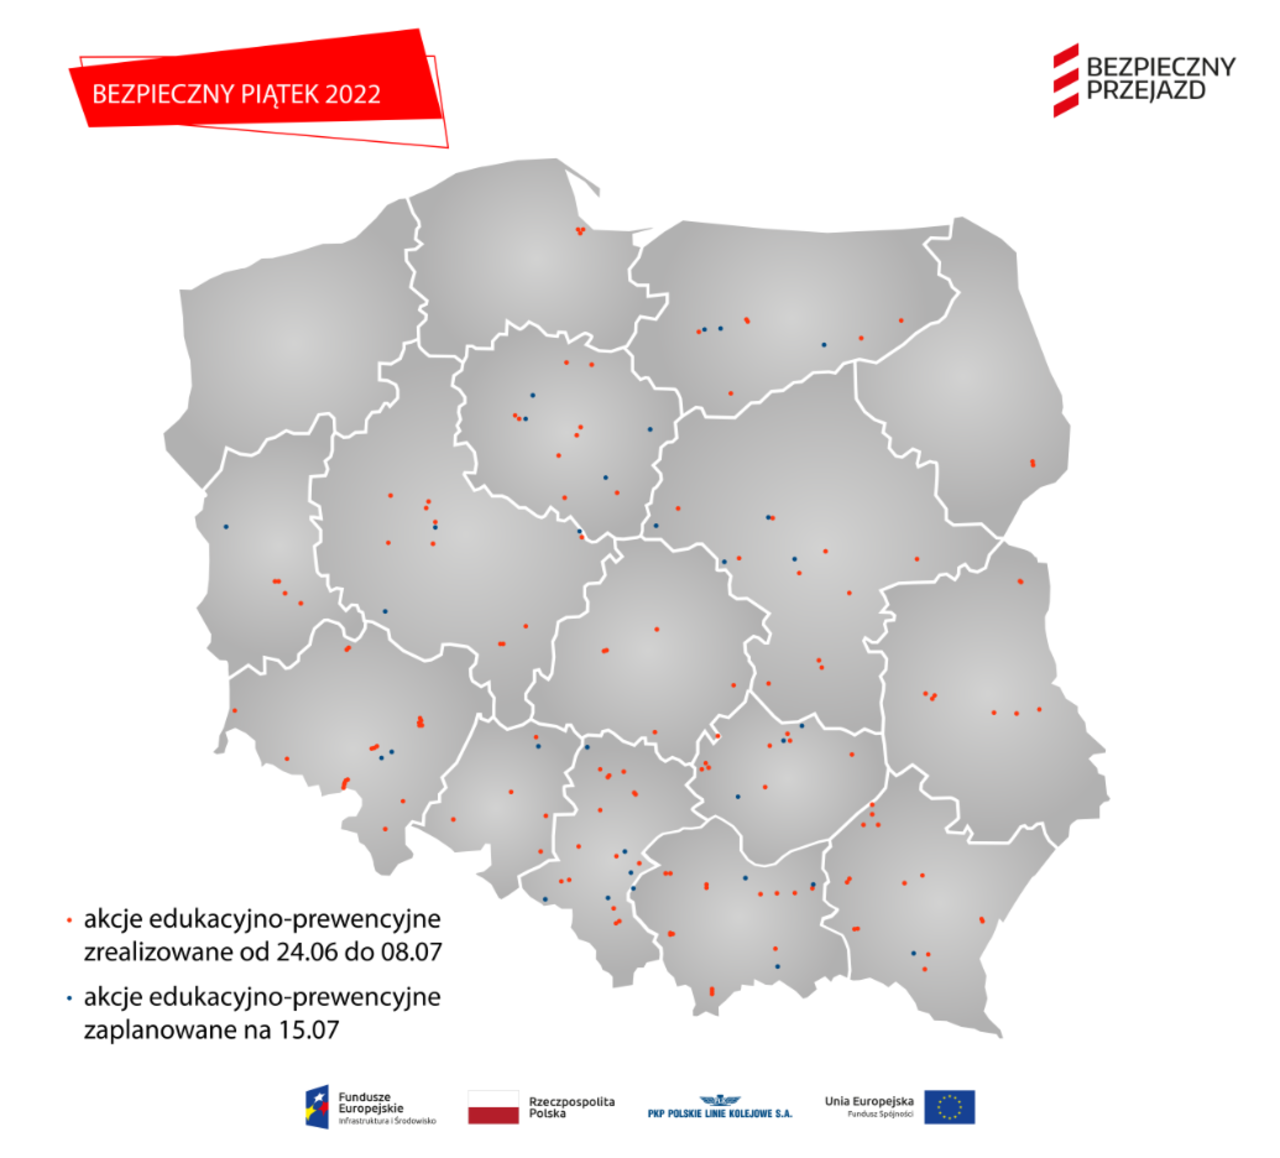 Mapa polski z lokalizacjami akcji Bezpieczny Piątek